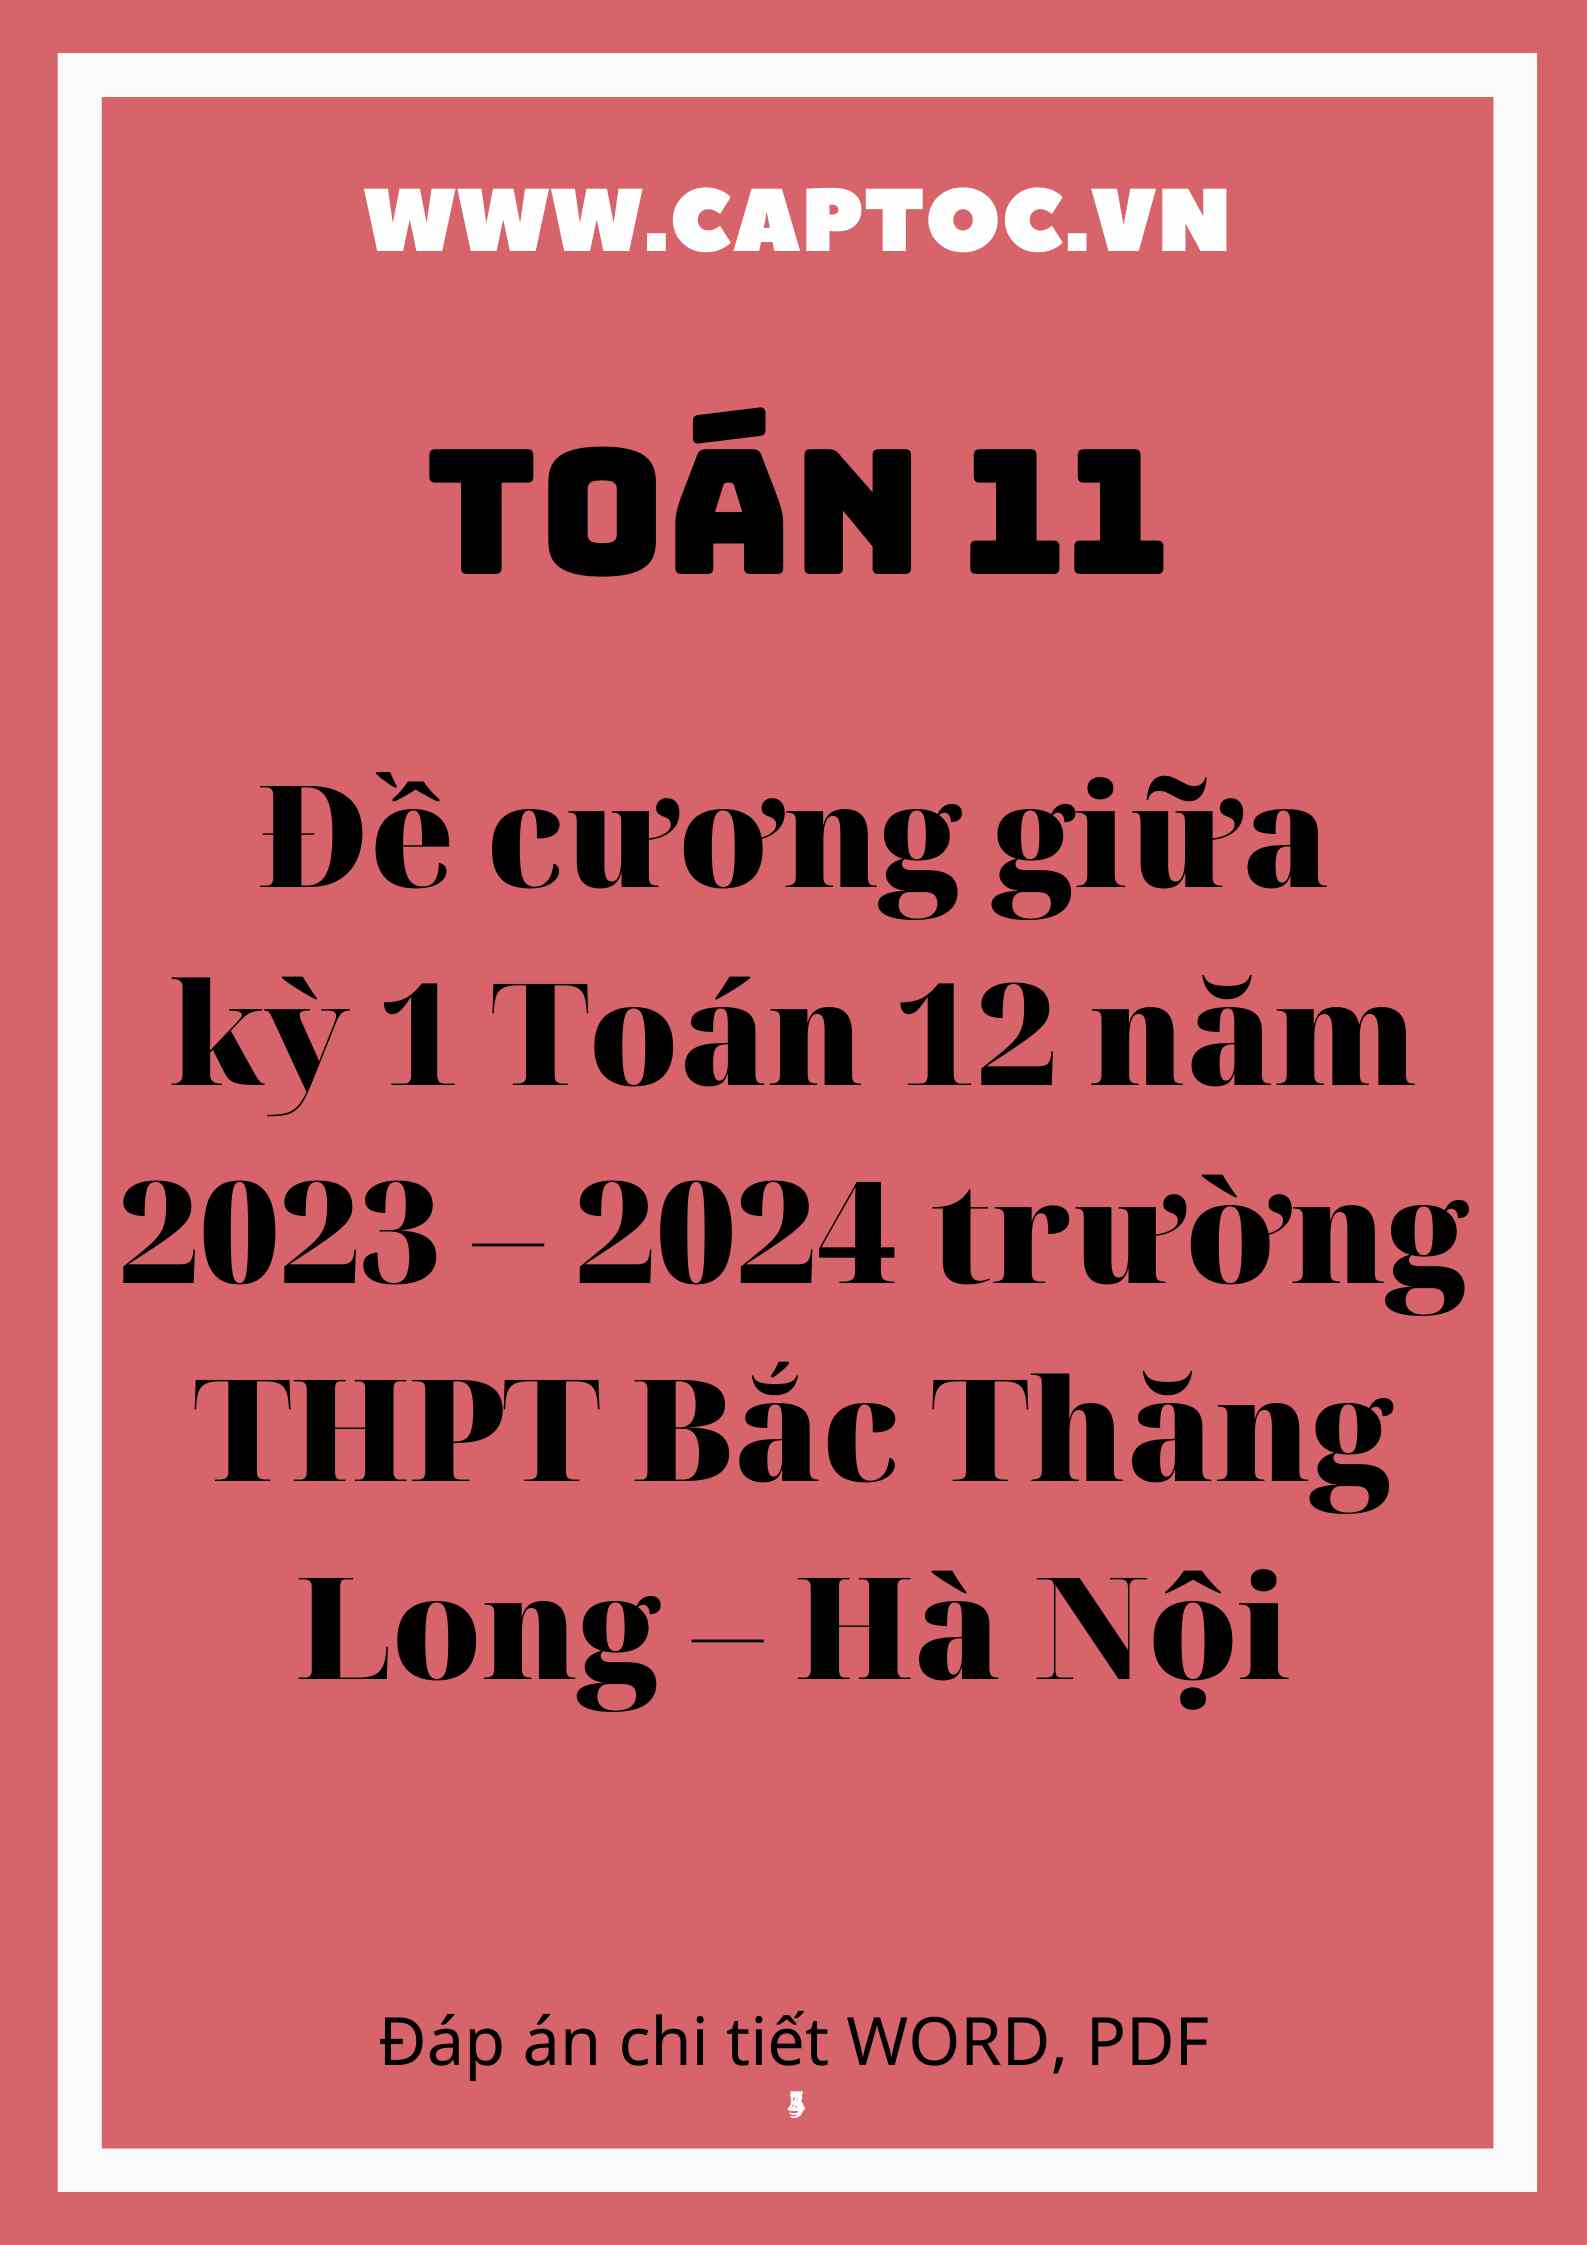 Đề cương giữa kỳ 1 Toán 12 năm 2023 – 2024 trường THPT Bắc Thăng Long – Hà Nội